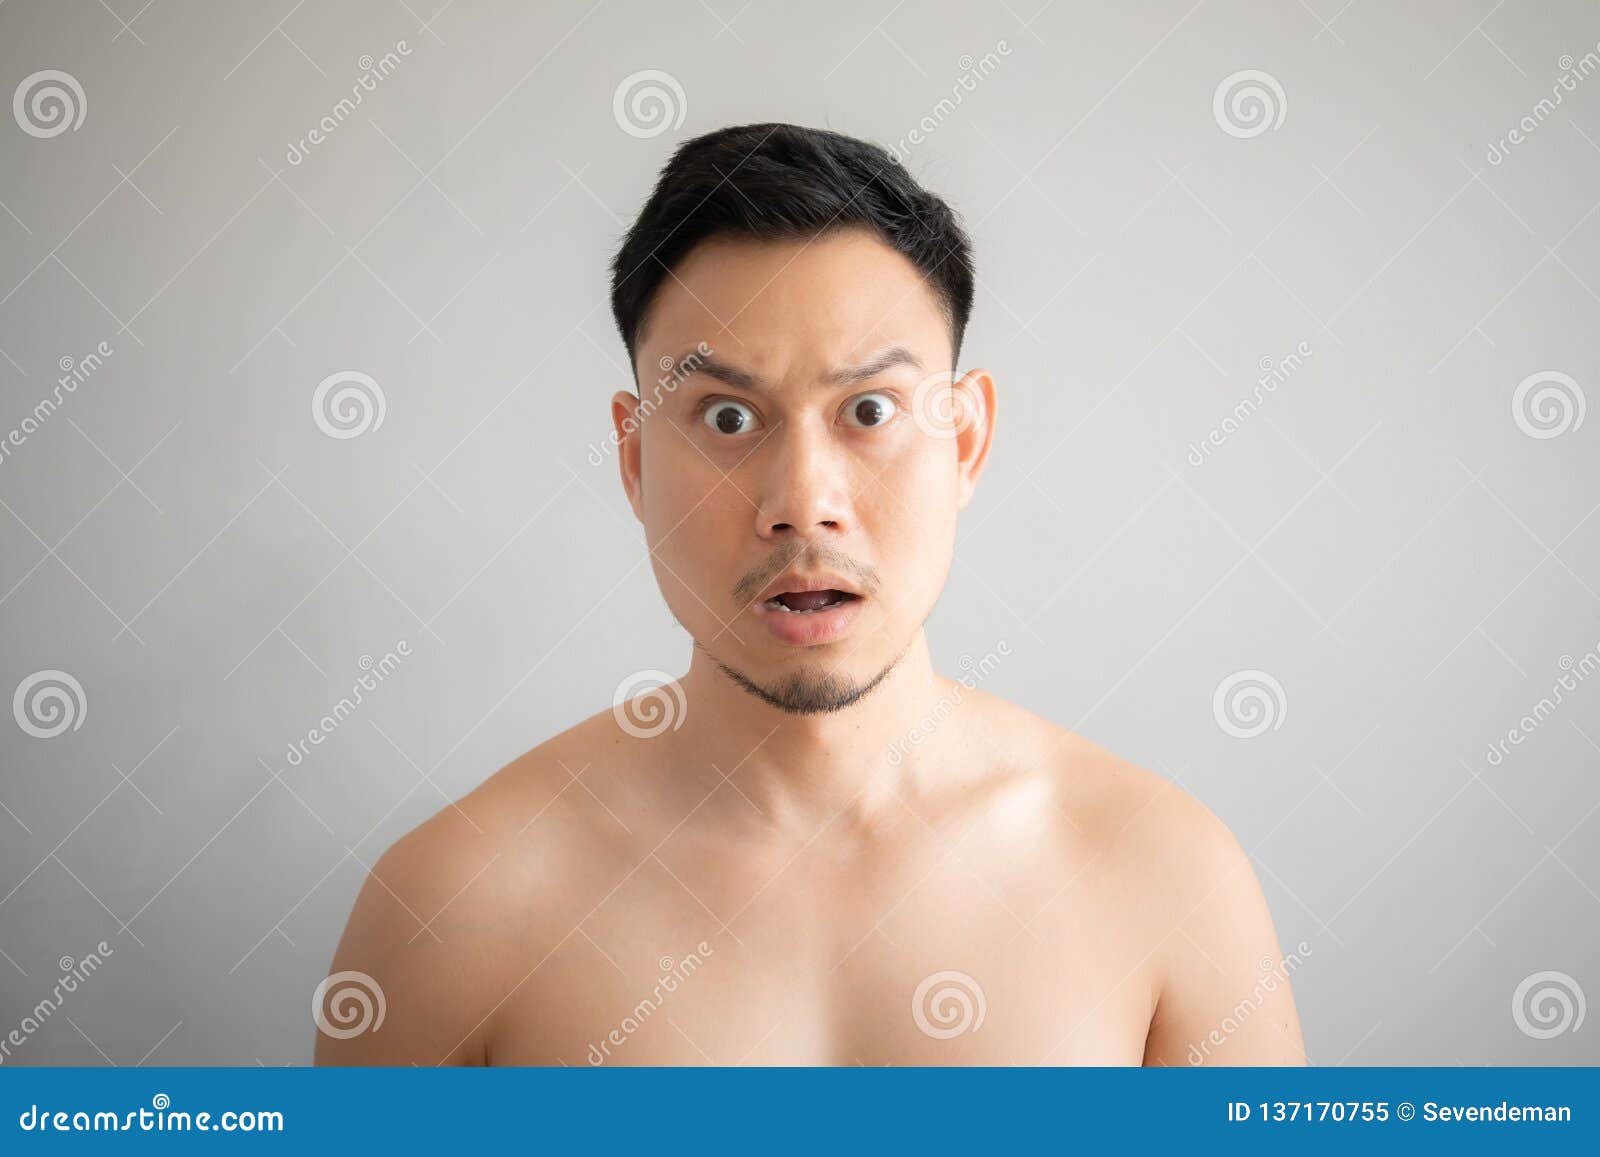 灰色背景中裸胸画亚洲男性惊喜脸库存图片. 图片包括有成人, 健康, 有  image